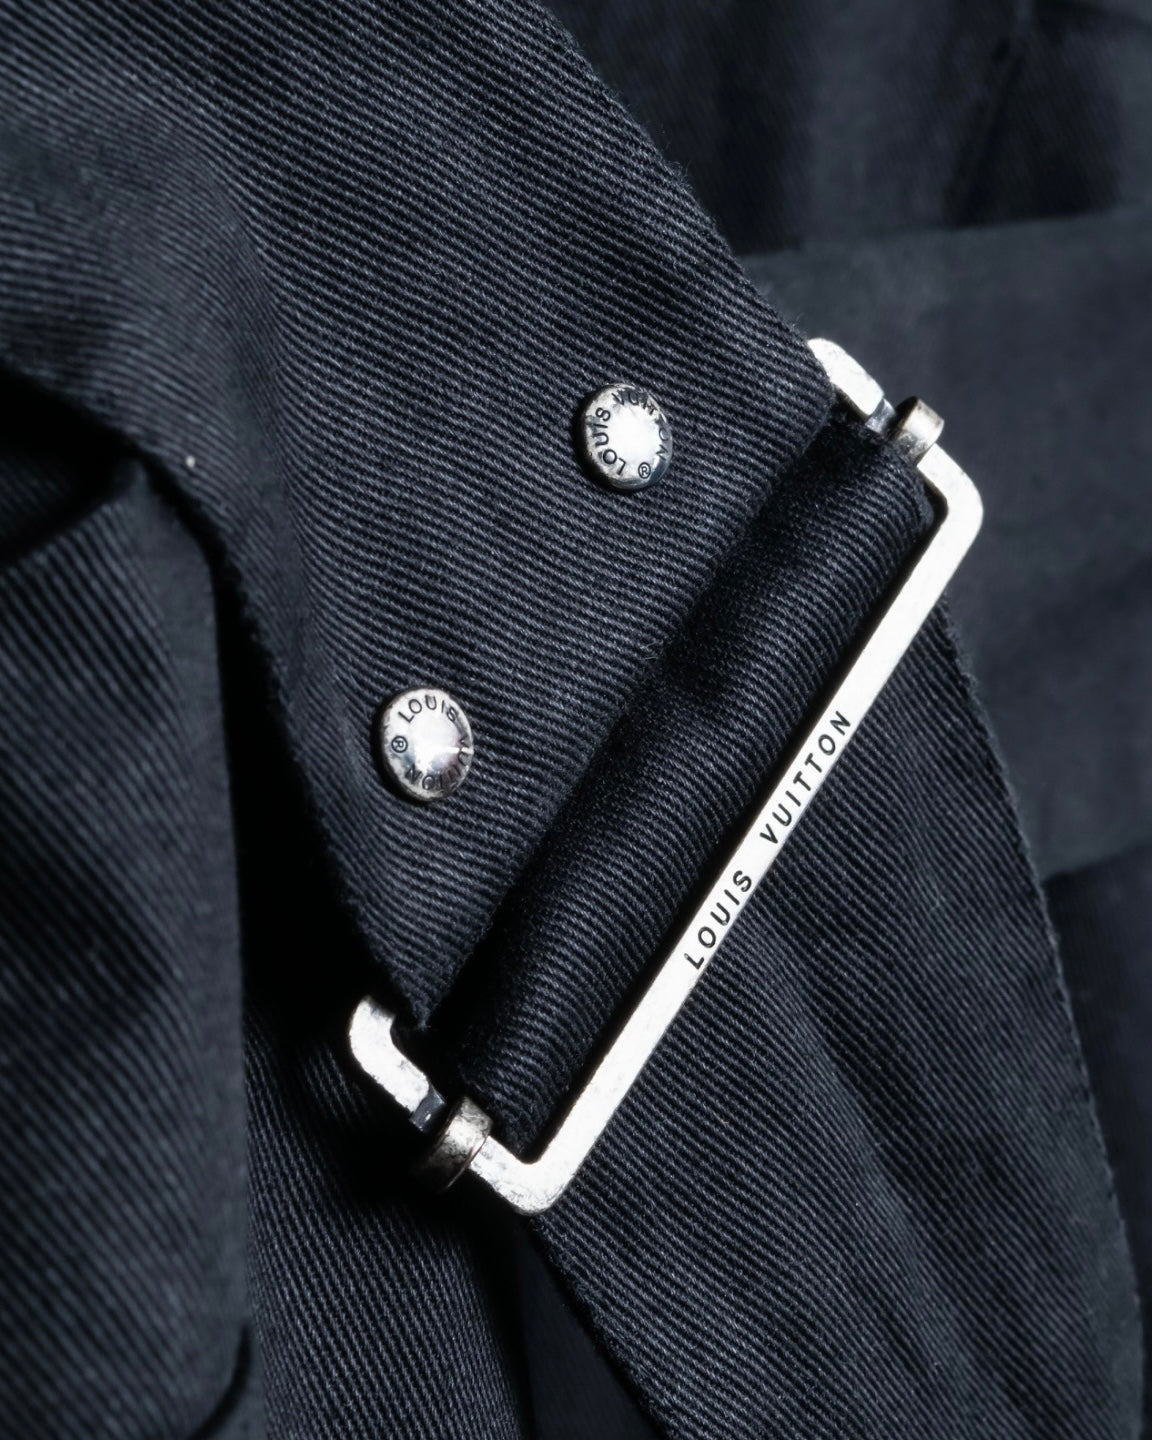 "Louis Vuitton" Peak lapel cotton coat